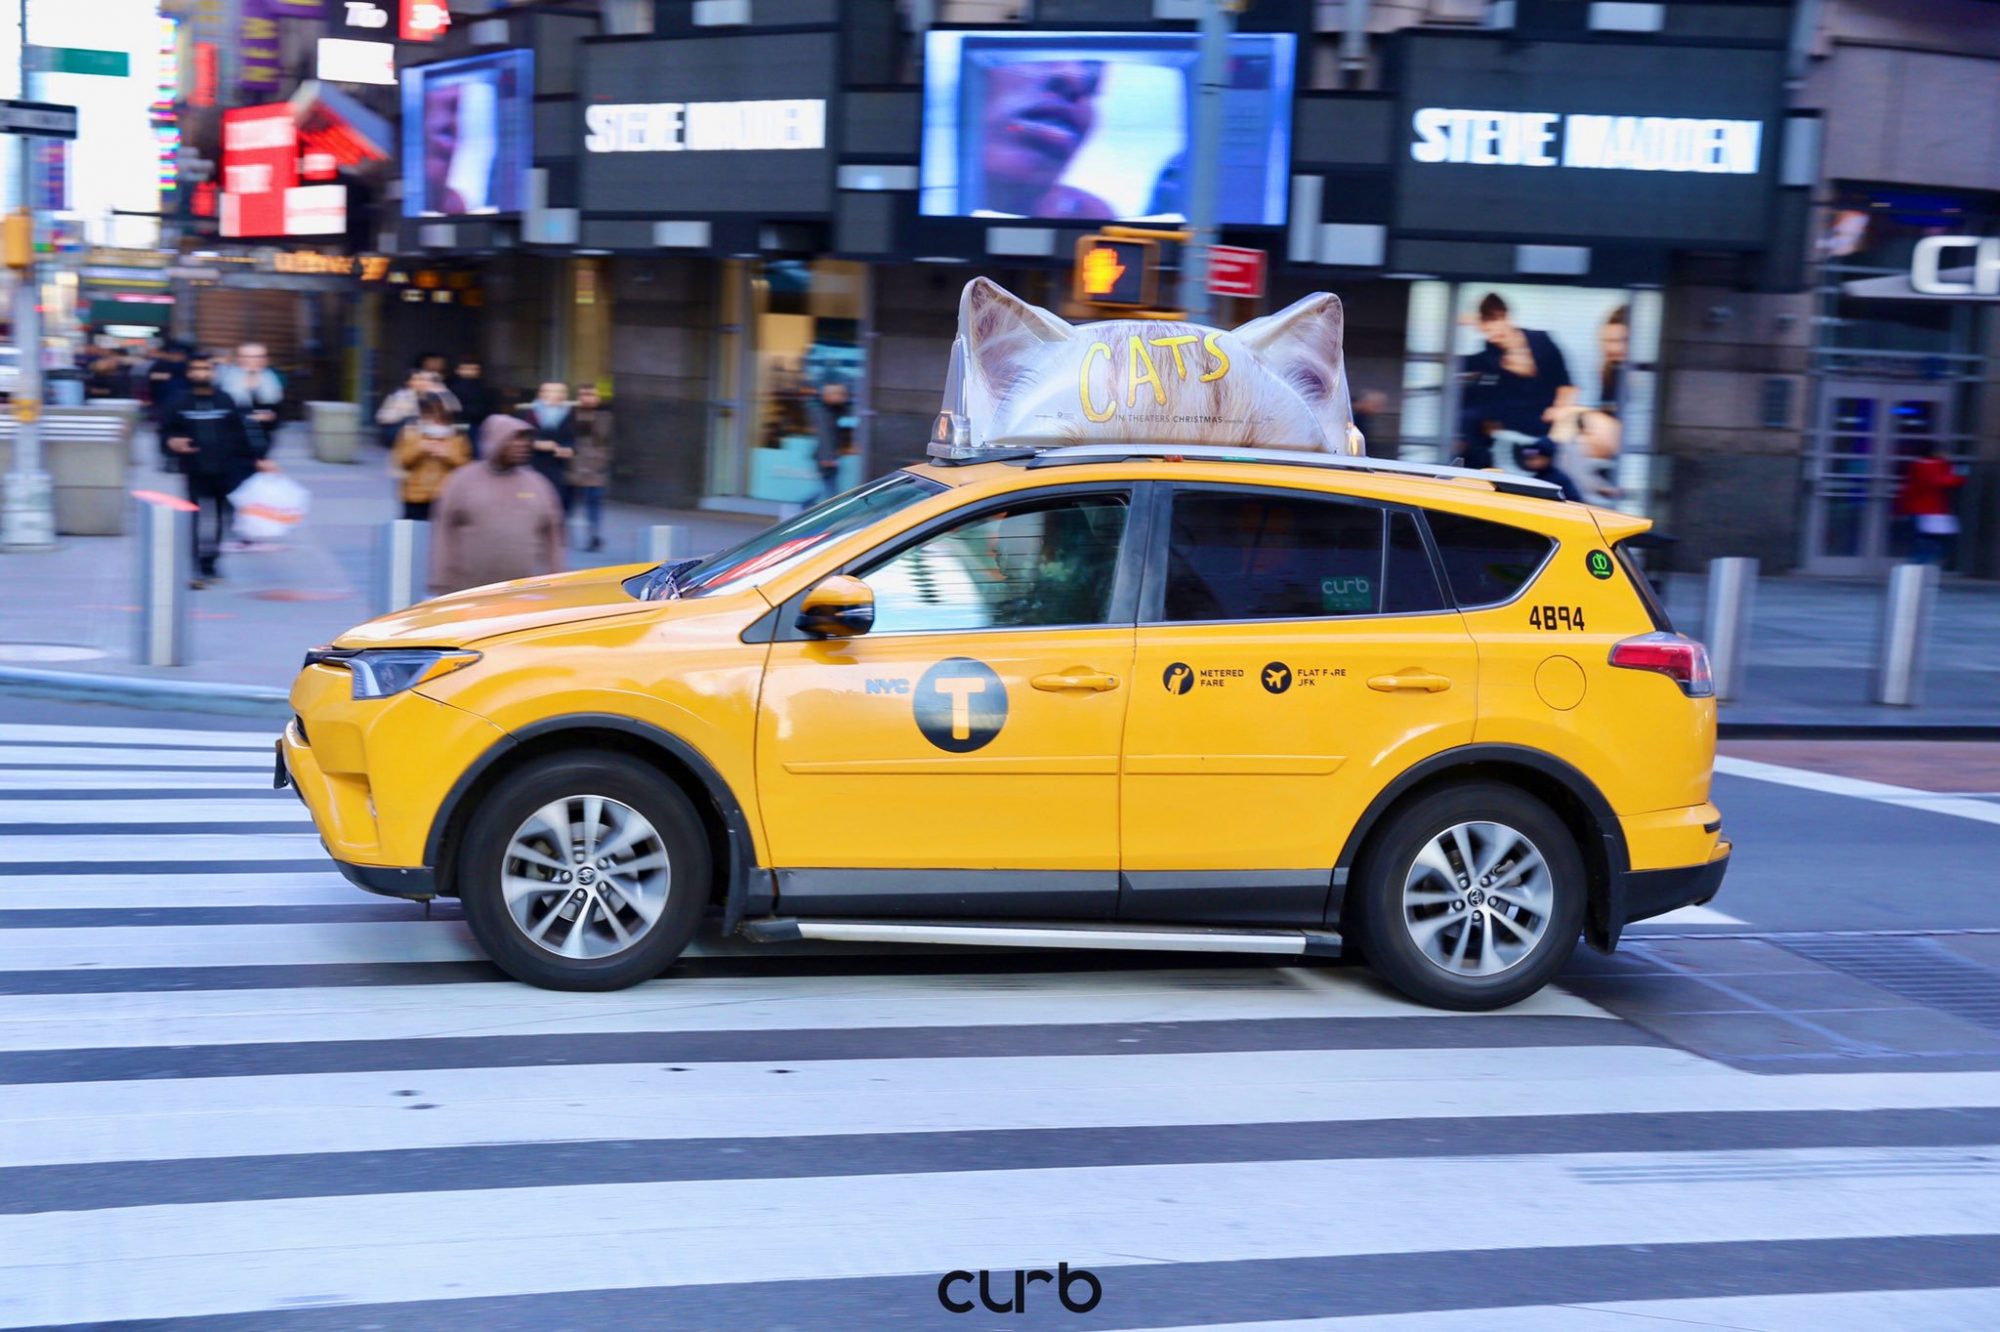 Cats: i taxi di New York e l'insolita campagna pubblicitaria thumbnail